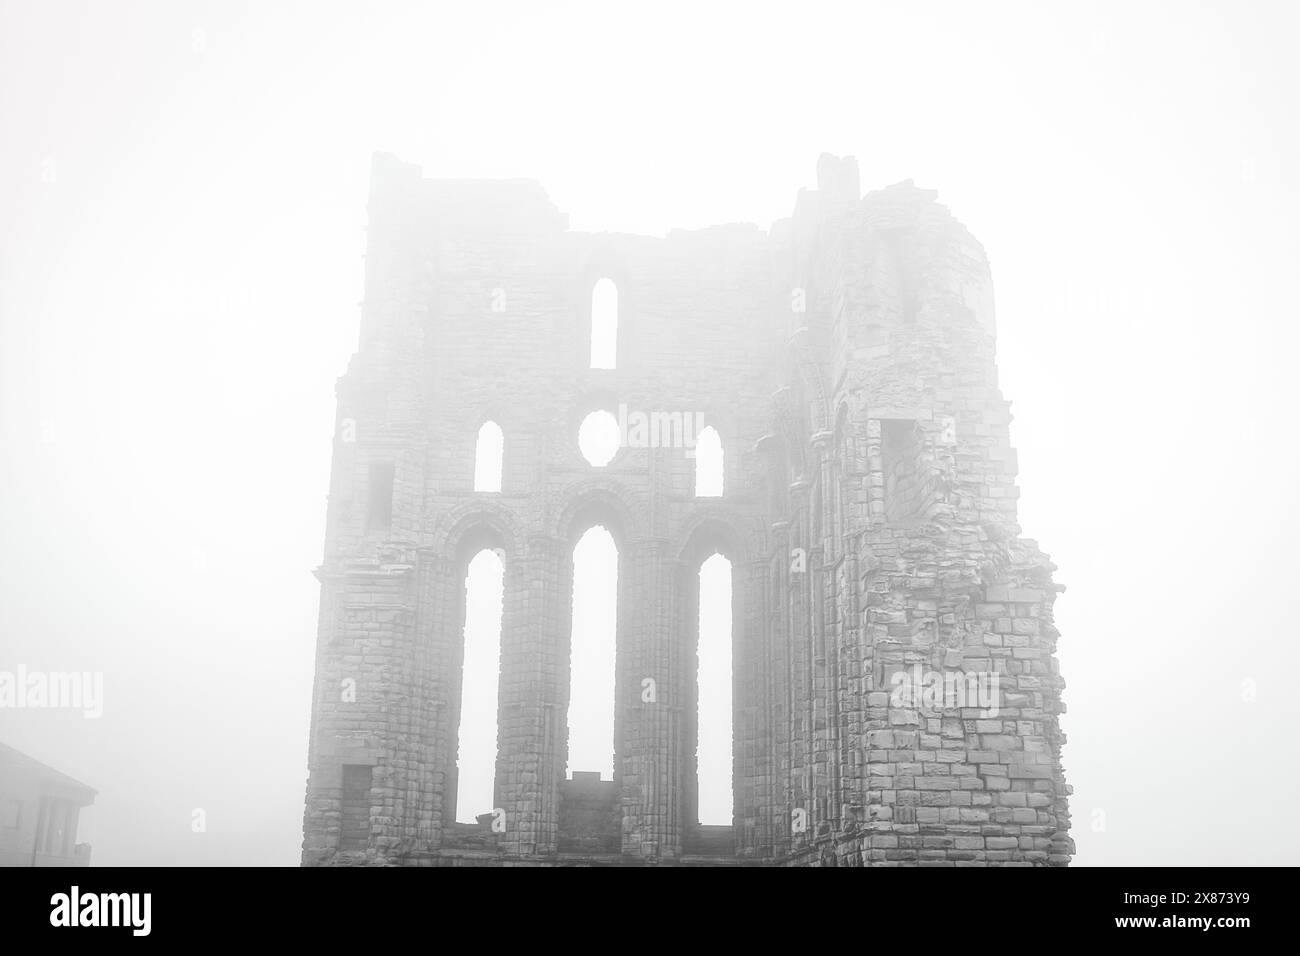 Una scena nebbiosa con le rovine di un antico edificio in pietra con alte finestre strette e archi. La struttura sembra essere parzialmente compressa, Foto Stock